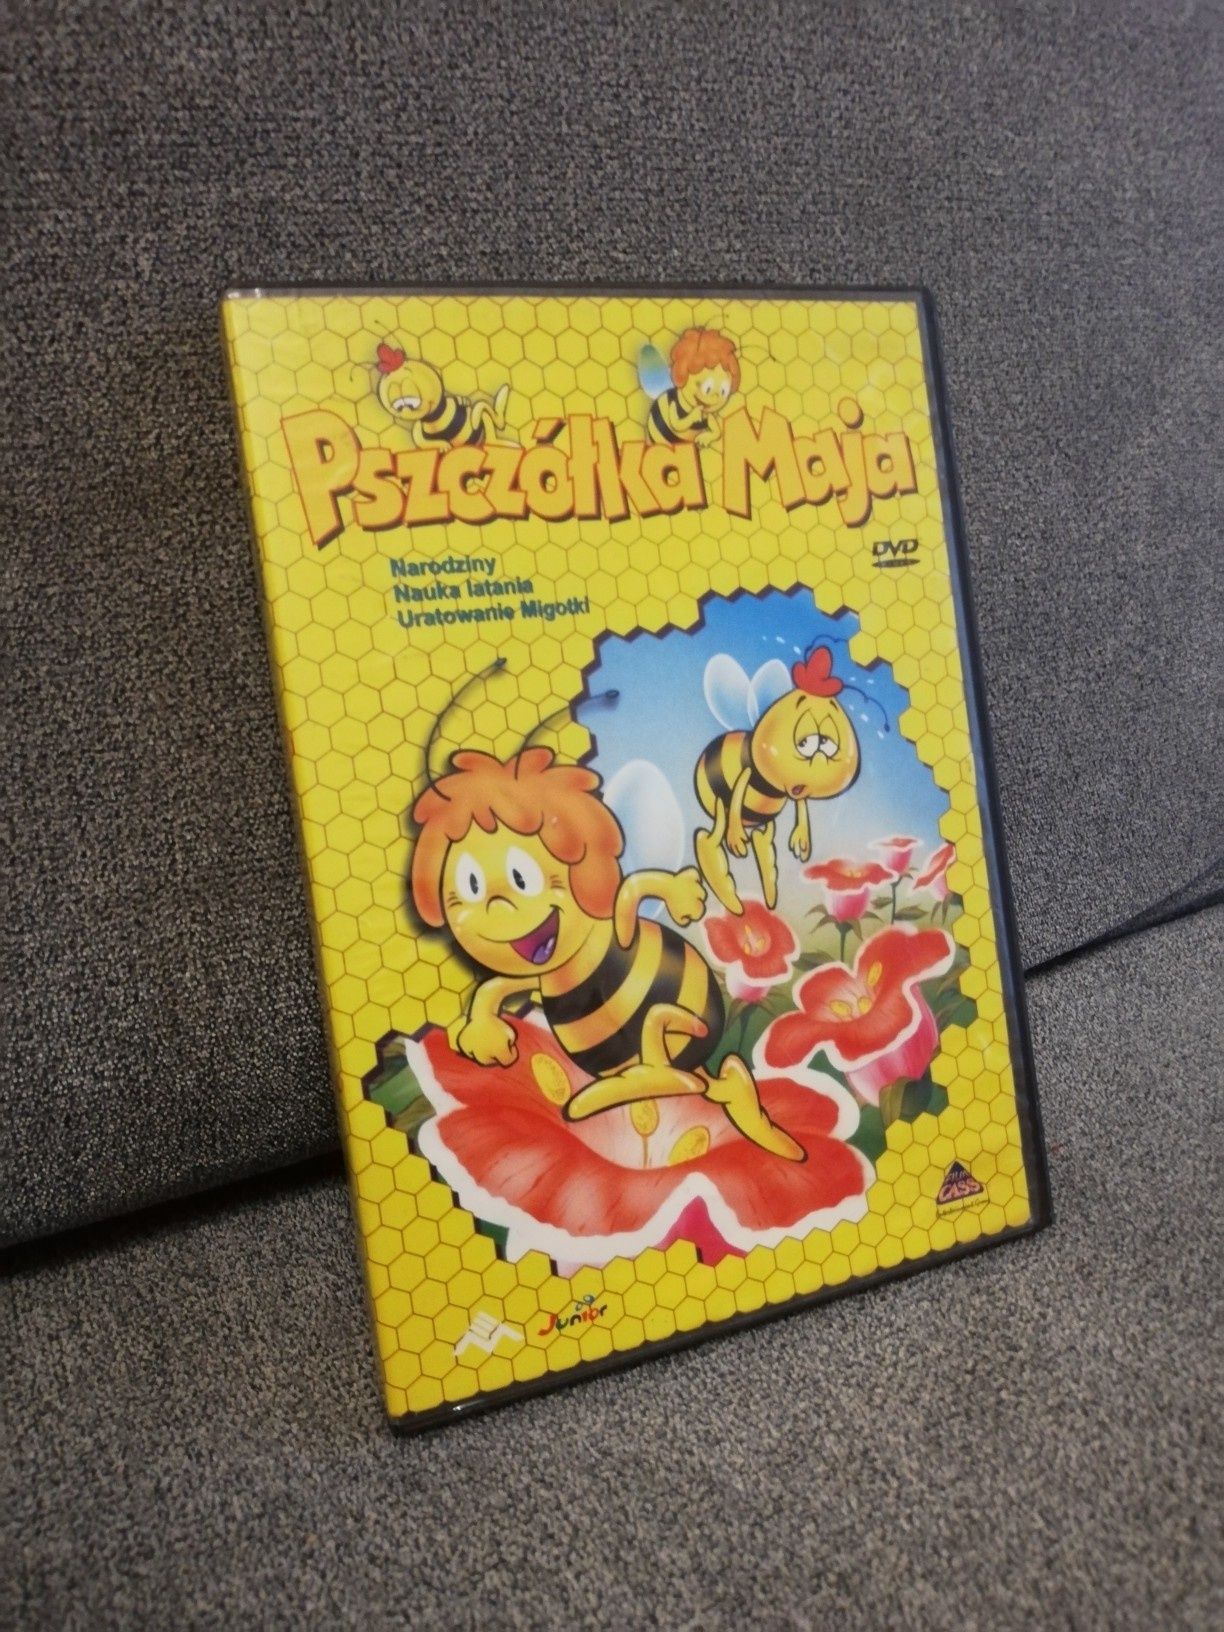 Pszczółka maja DVD BOX